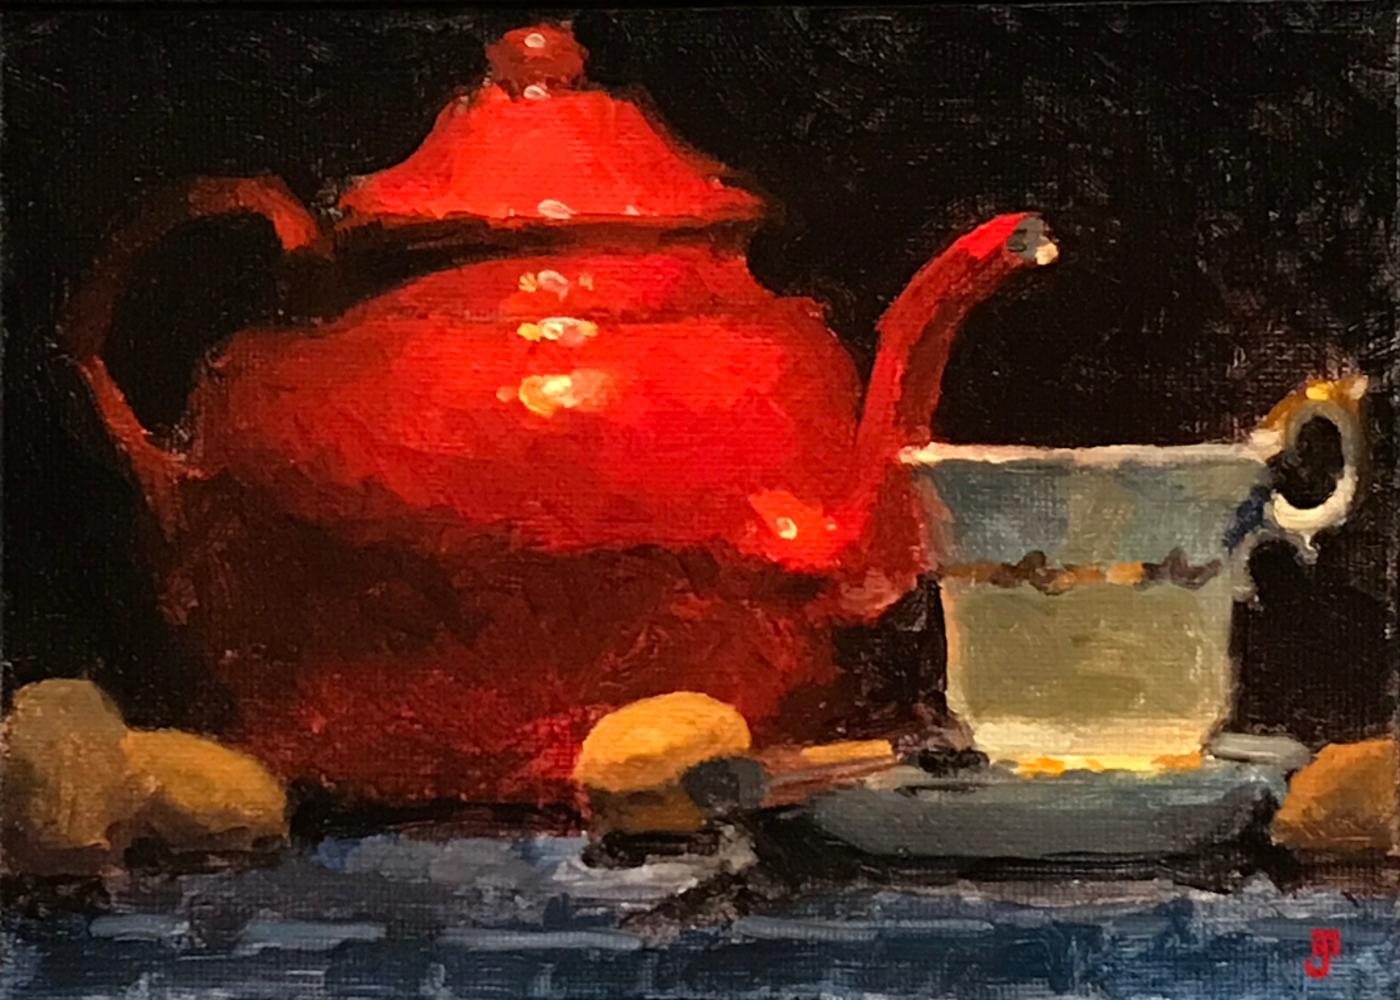 Painting Your Own Tea Pot – Joekels Tea Shop